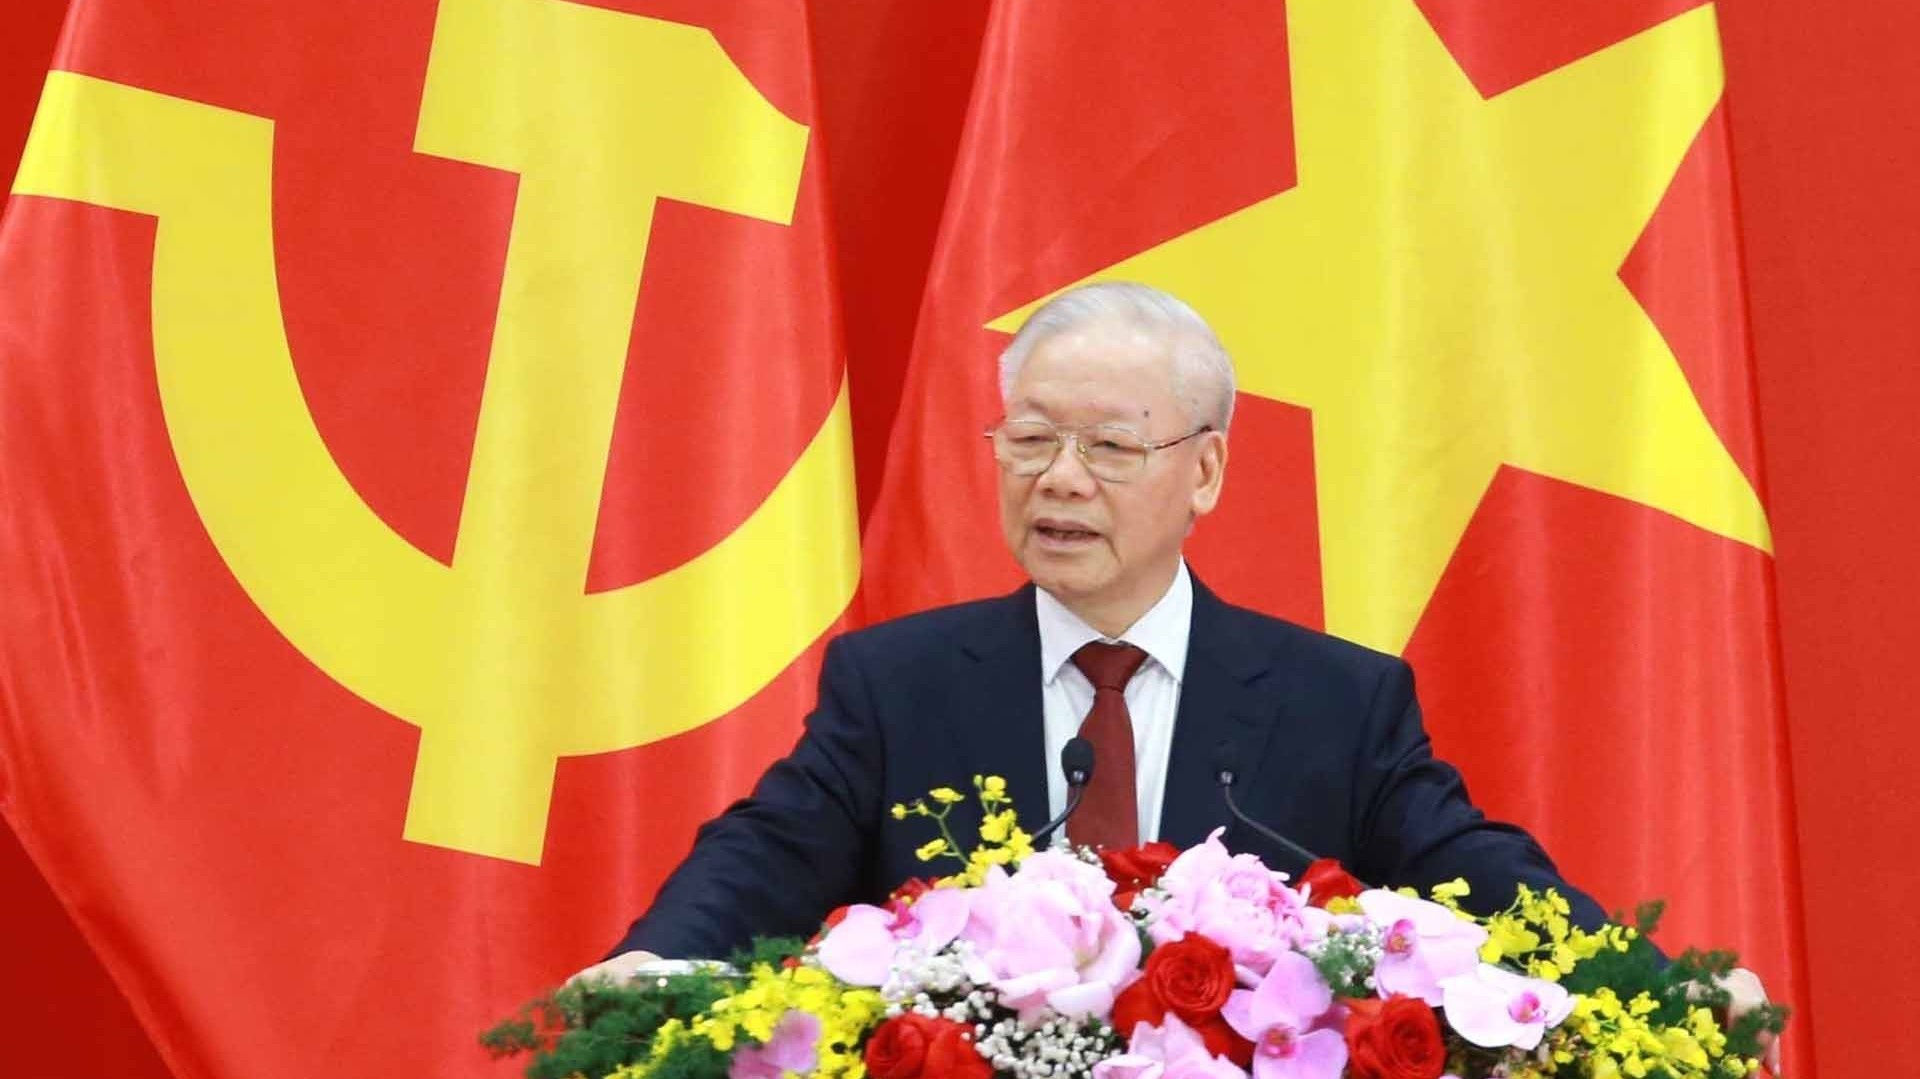 Tự hào và tin tưởng dưới lá cờ vẻ vang của Đảng, quyết tâm xây dựng nước Việt Nam ngày càng giàu mạnh, văn minh, văn hiến và anh hùng